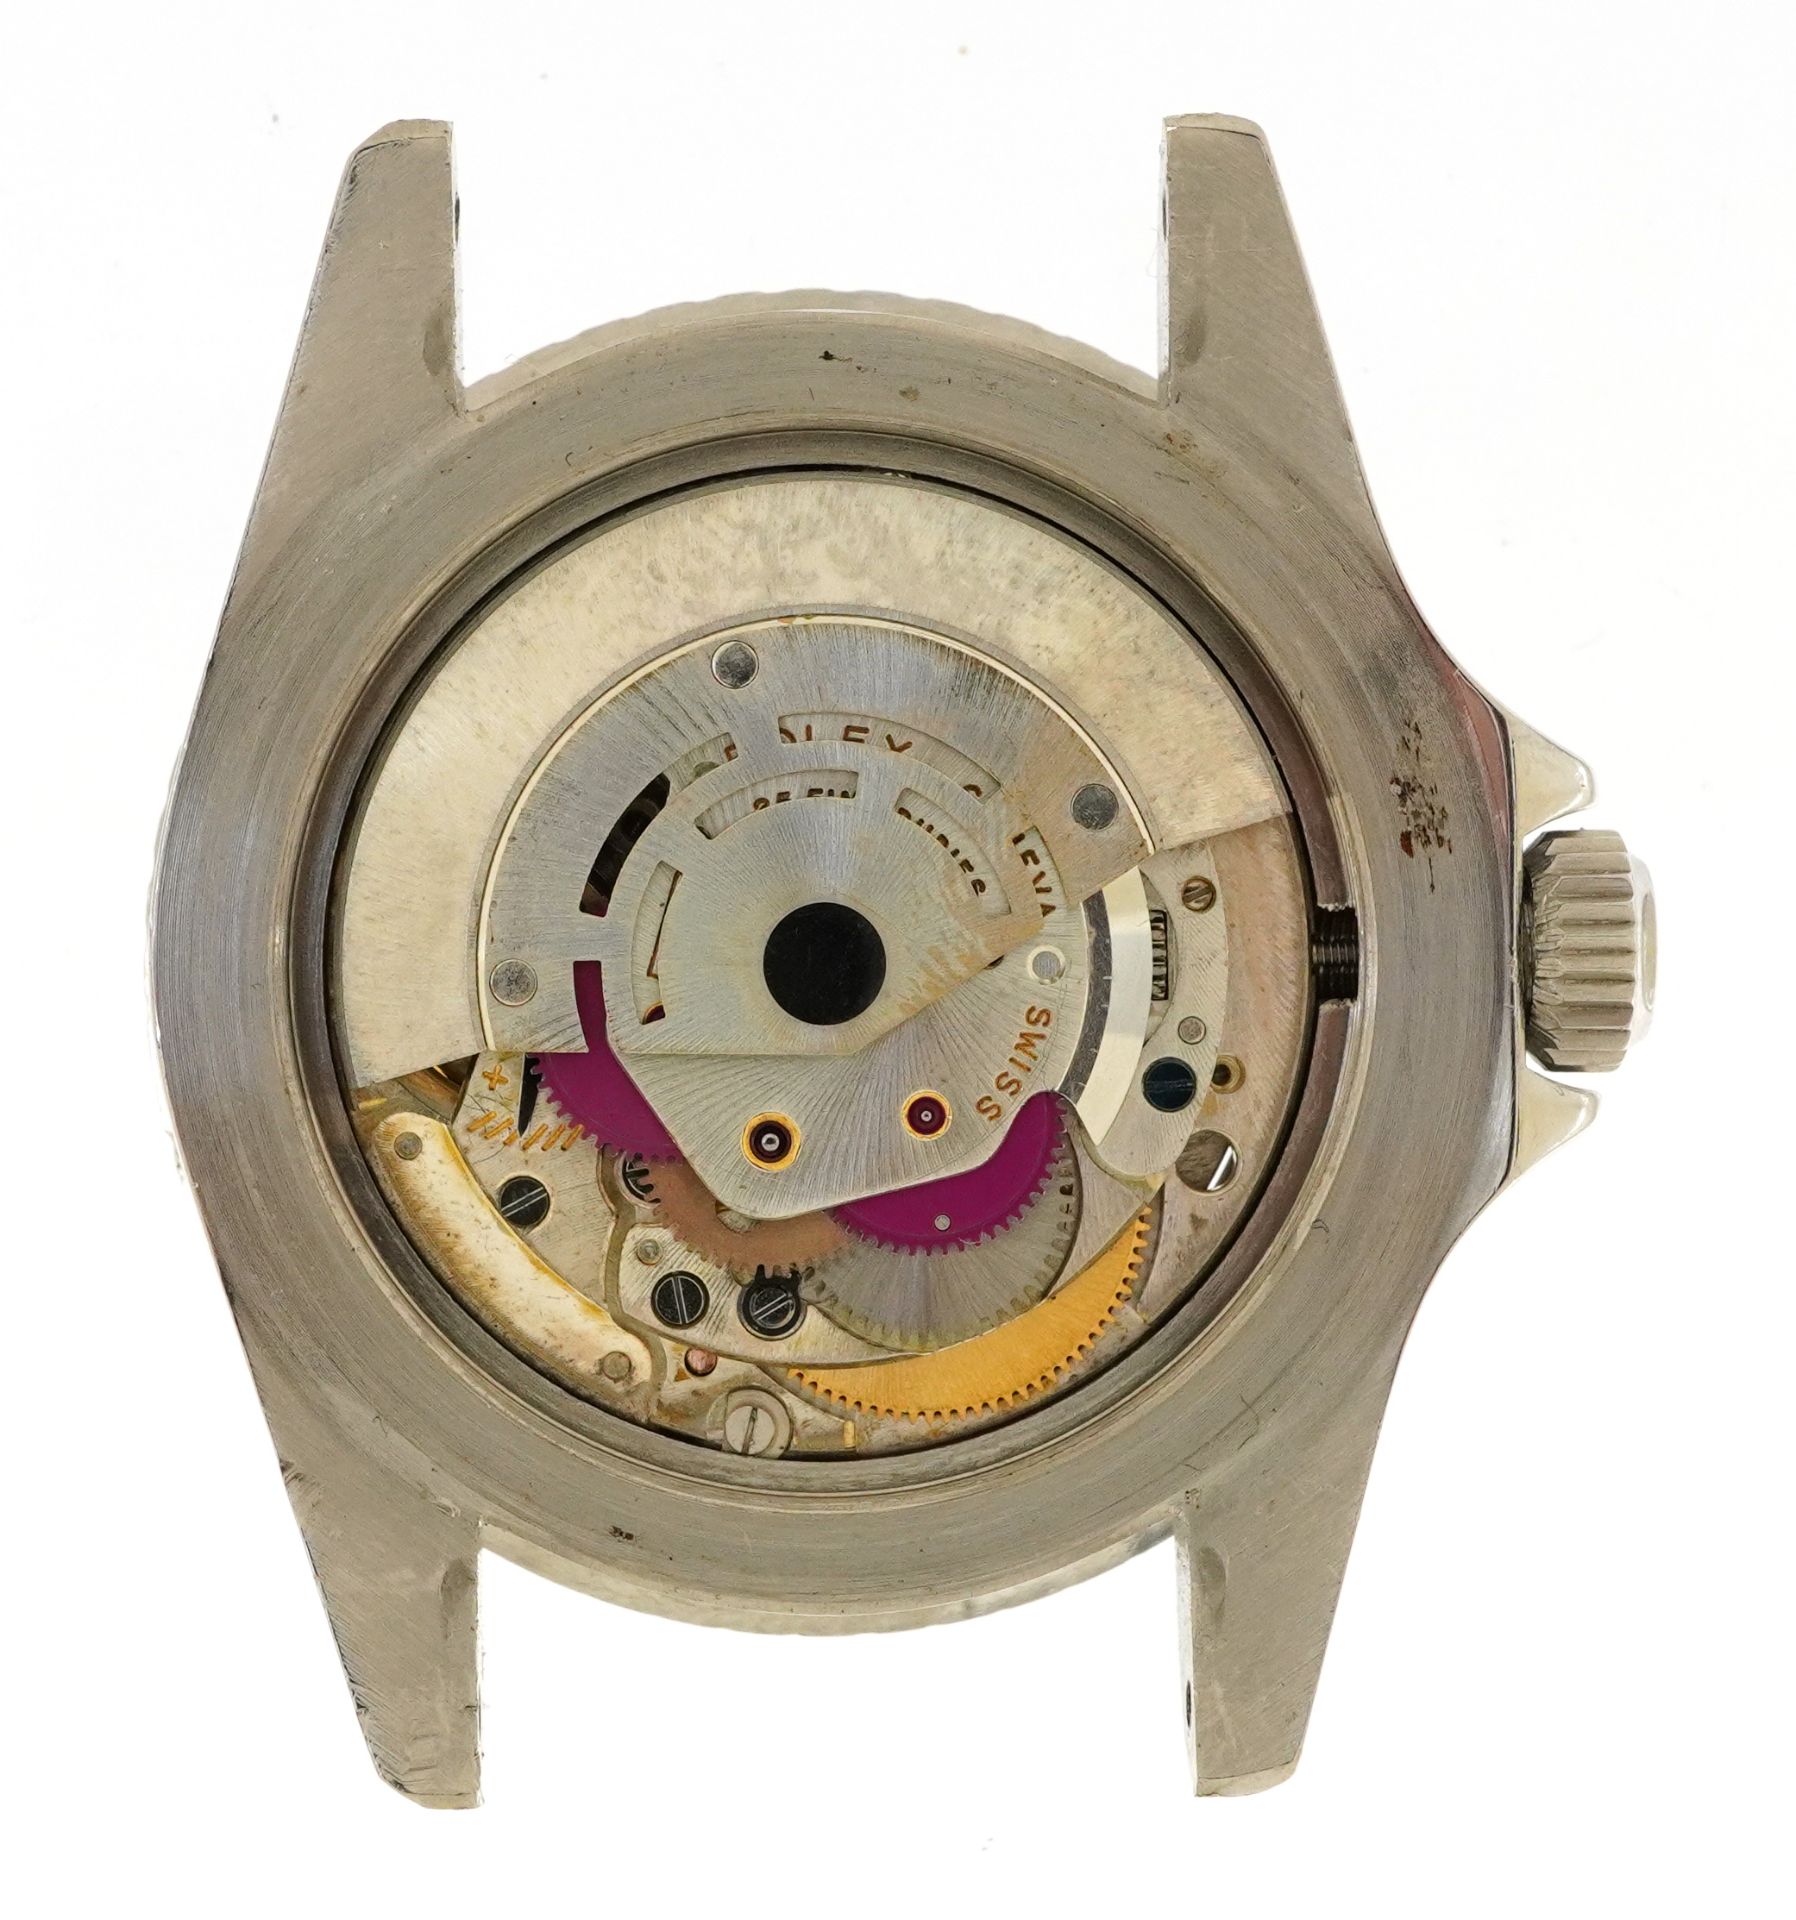 Rolex, gentleman's Rolex Oyster Submariner wristwatch, ref 5521, serial number 818329, 40mm - Image 11 of 11